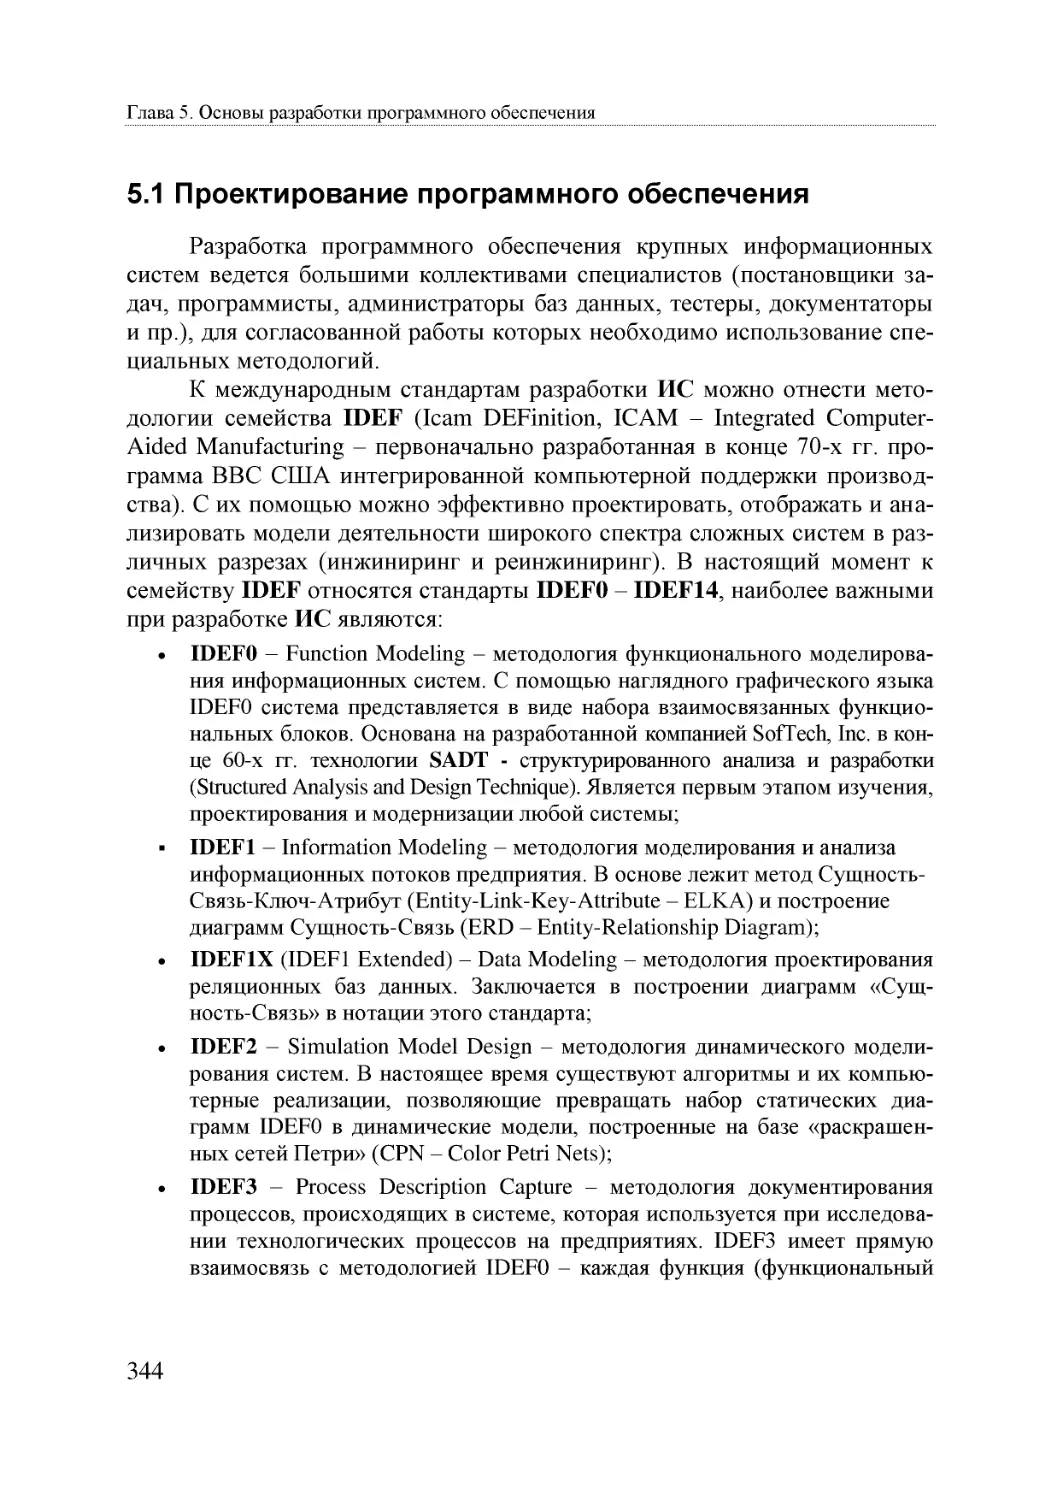 Informatika_Uchebnik_dlya_vuzov_2010 344